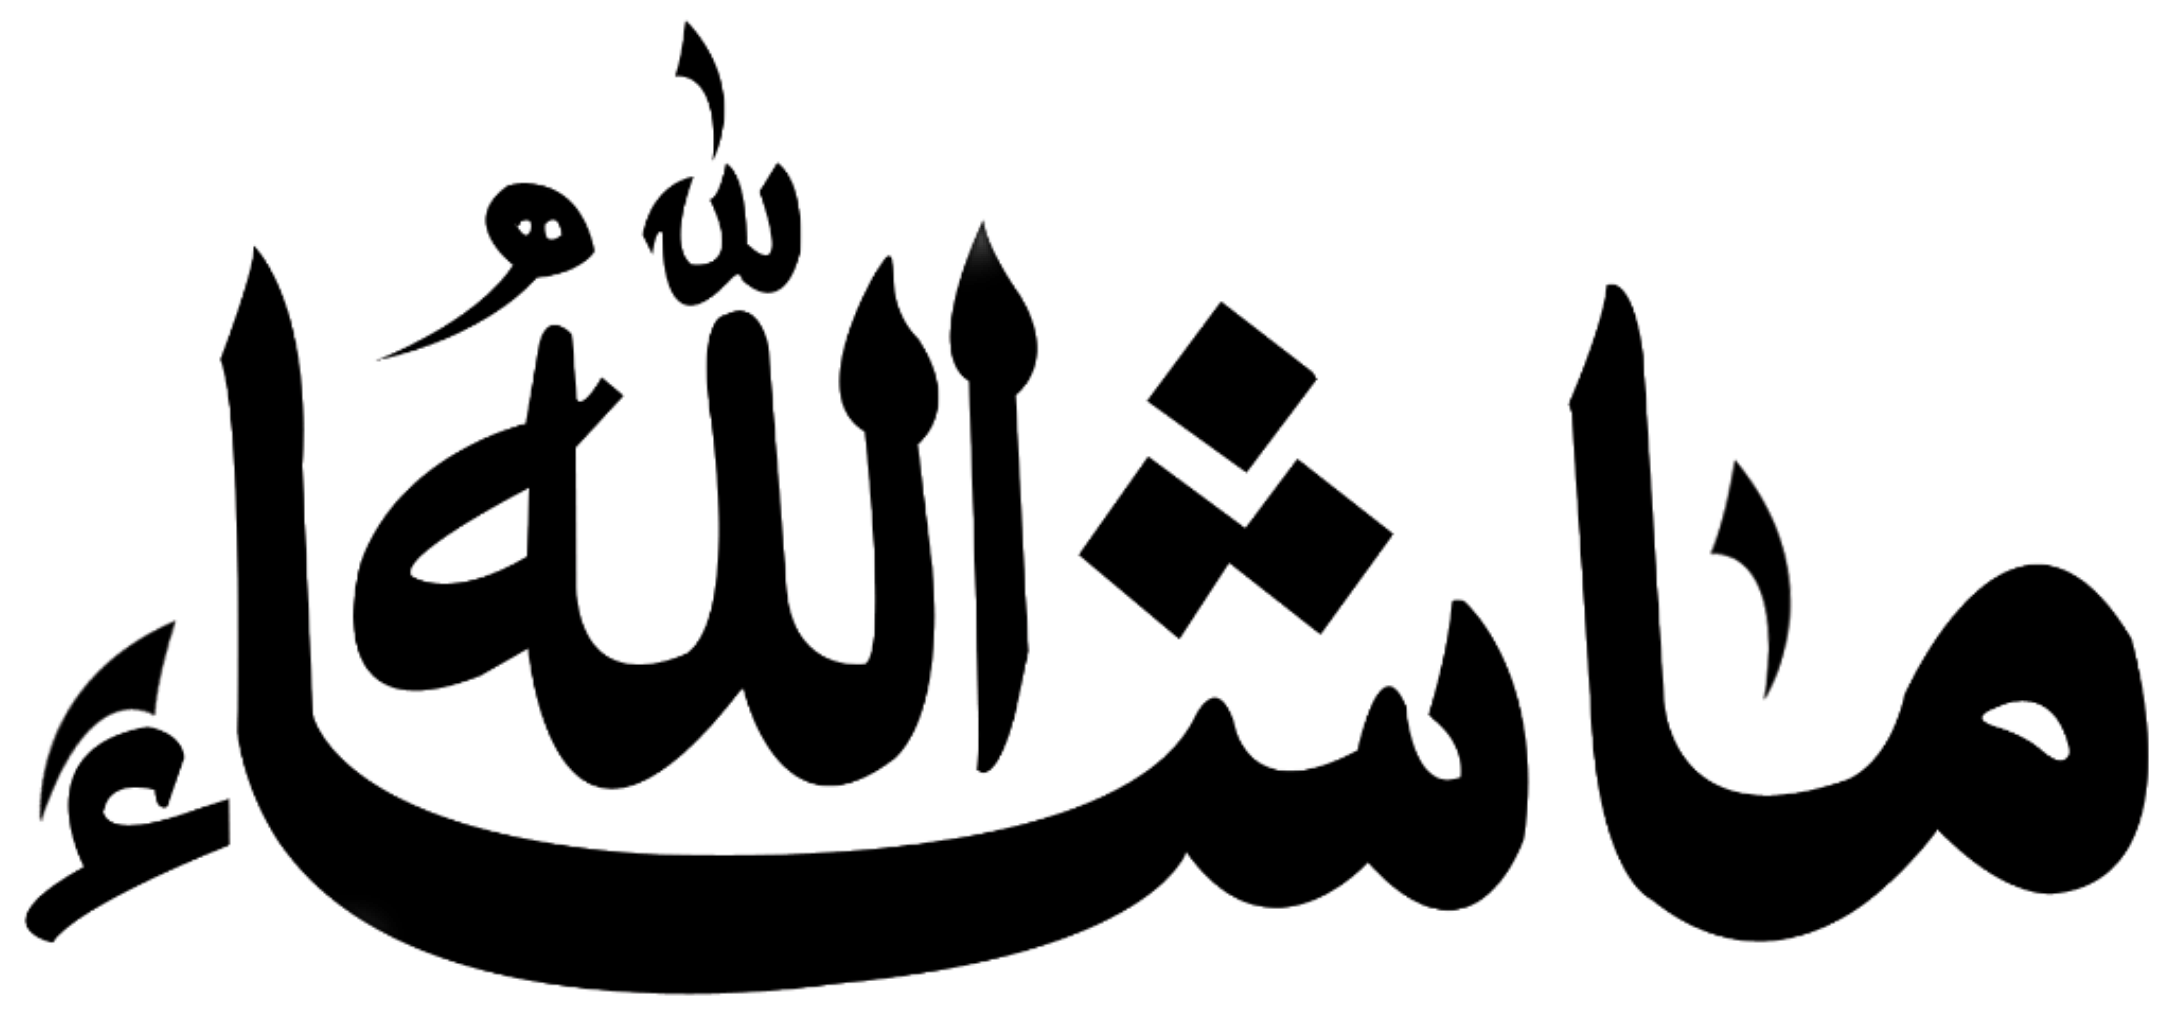 Арабская электронная группа. Исламская каллиграфия МАШААЛЛАХ. Арабские надписи. Арабские символы. Исламские надписи.